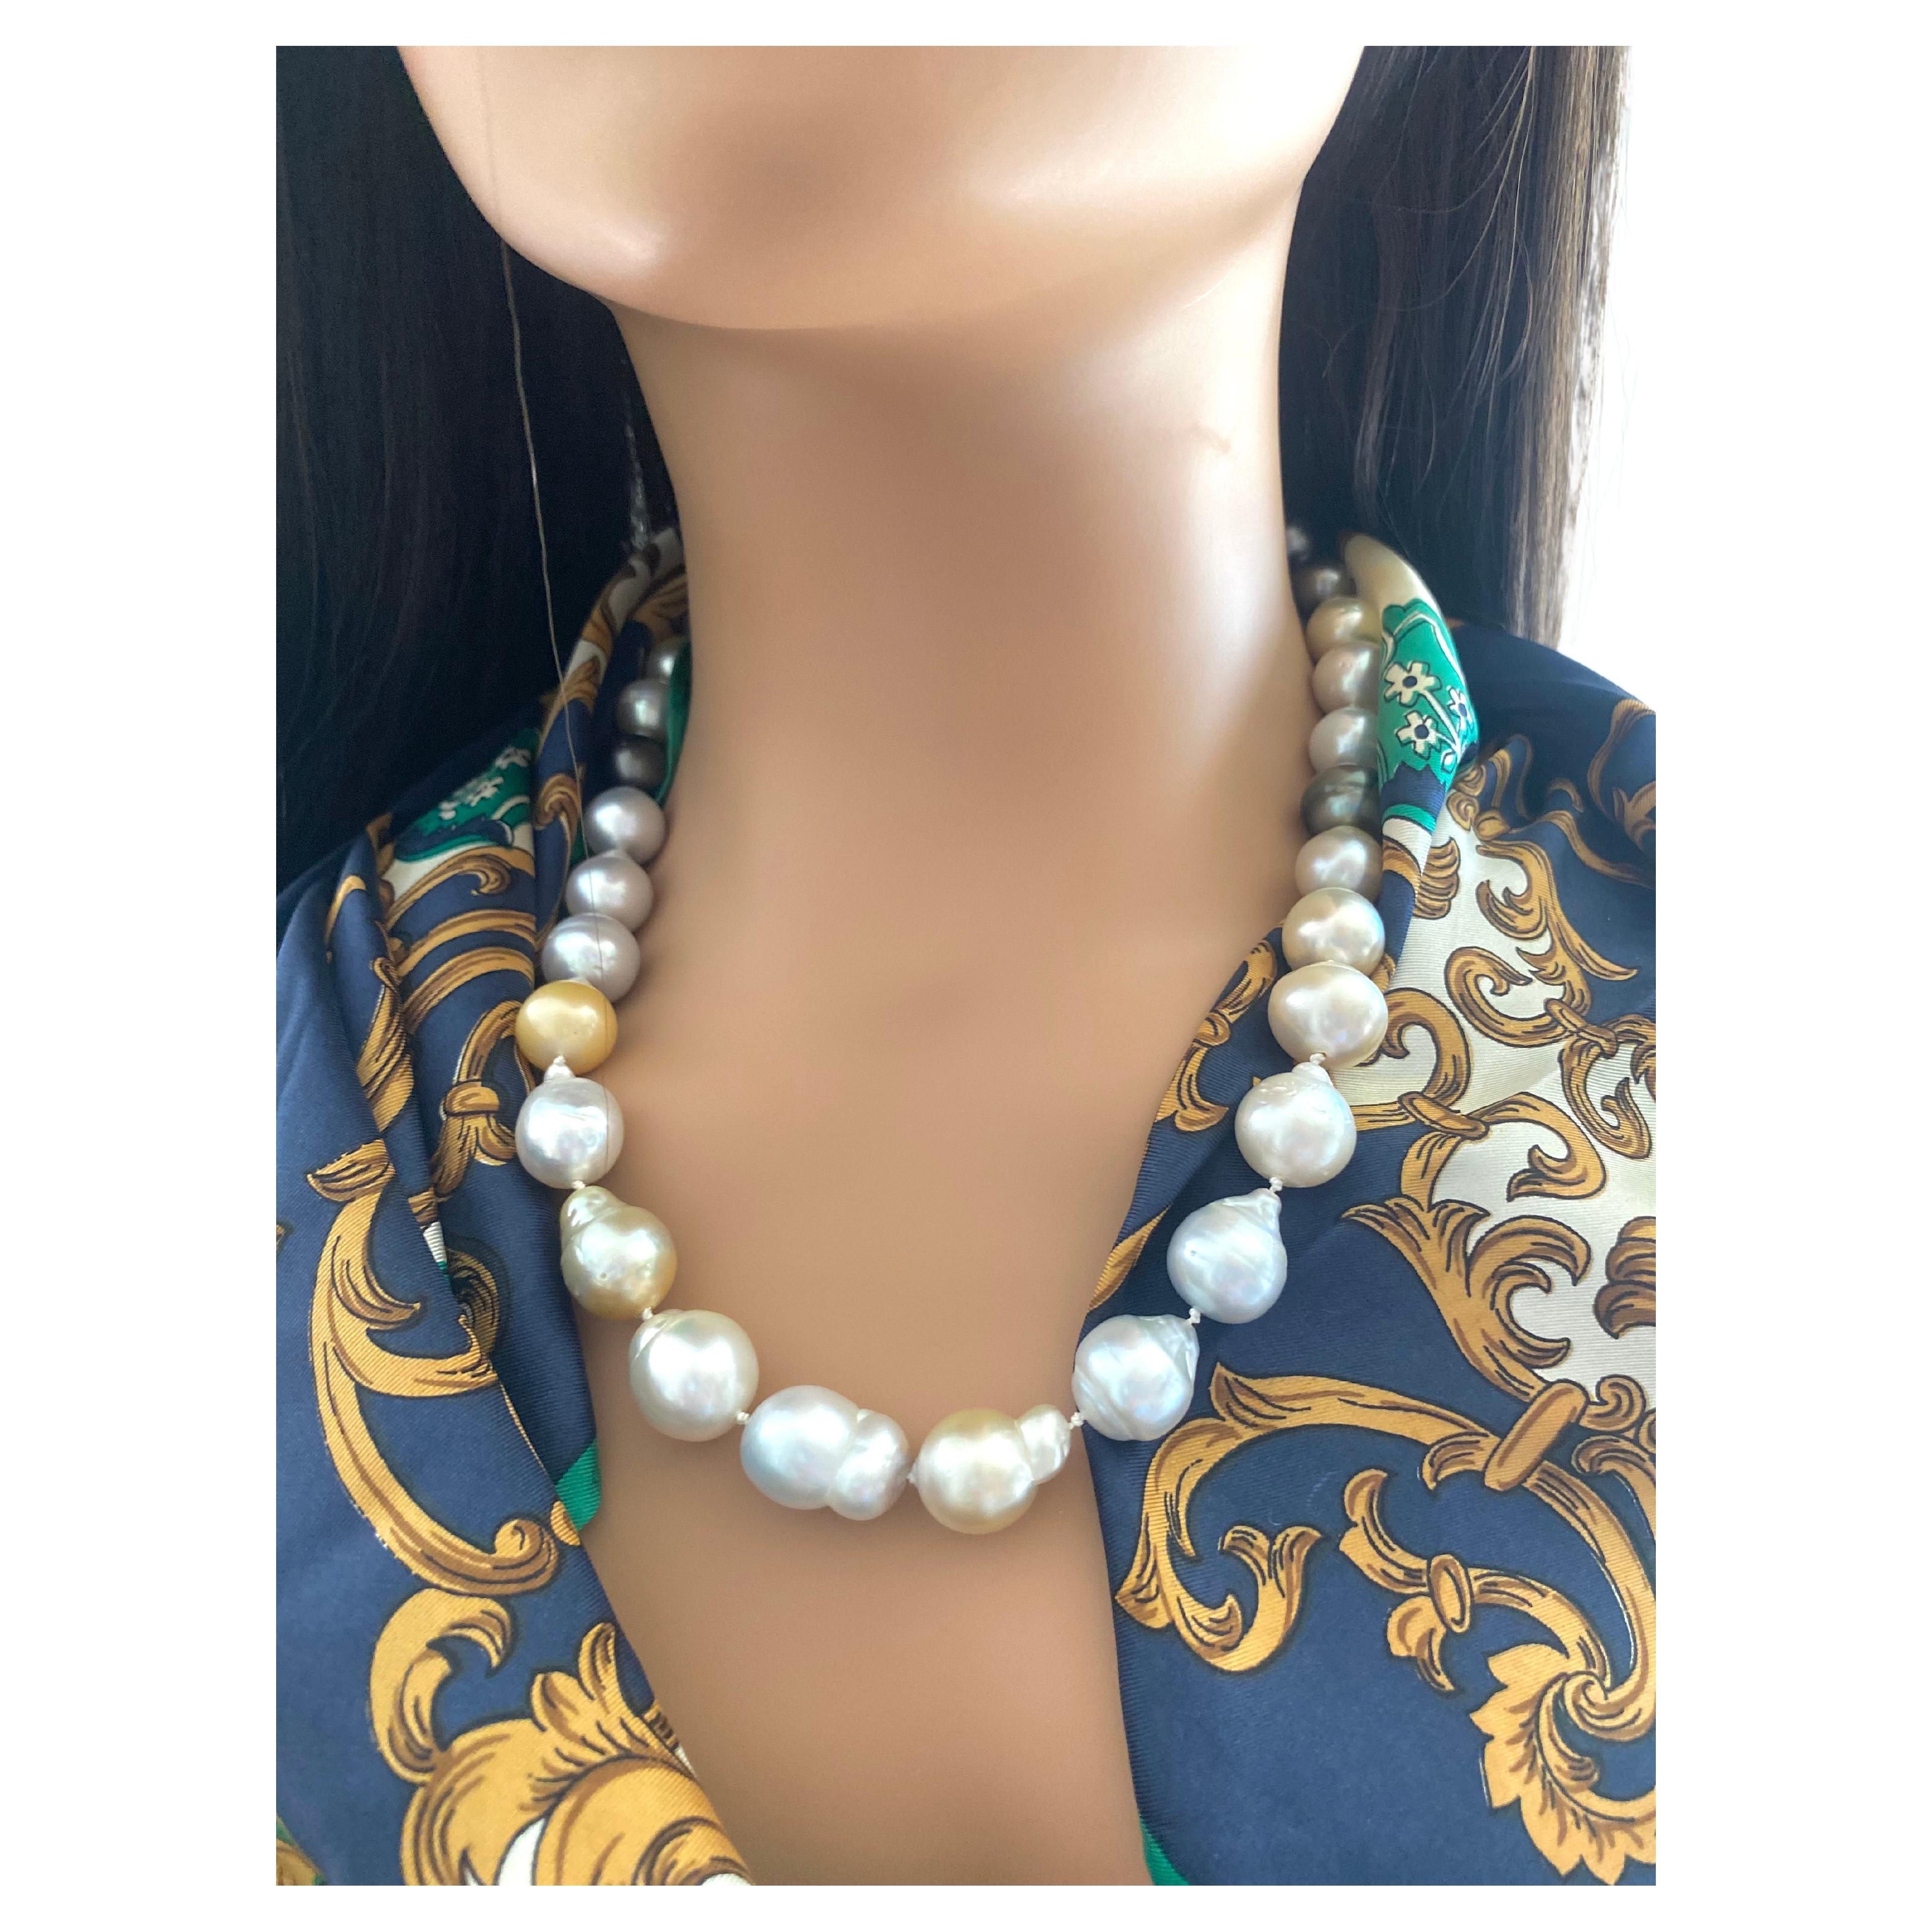 
Estate Stunning Multicolor grau, silber, creme, und weiß ungefärbt Südsee Barock Perlen Halskette. 
30 Barockperlen, jede Perle ist einzigartig. Die Halskette ist mit einem runden Kugelverschluss aus 14 Karat Gelbgold versehen. Die atemberaubende